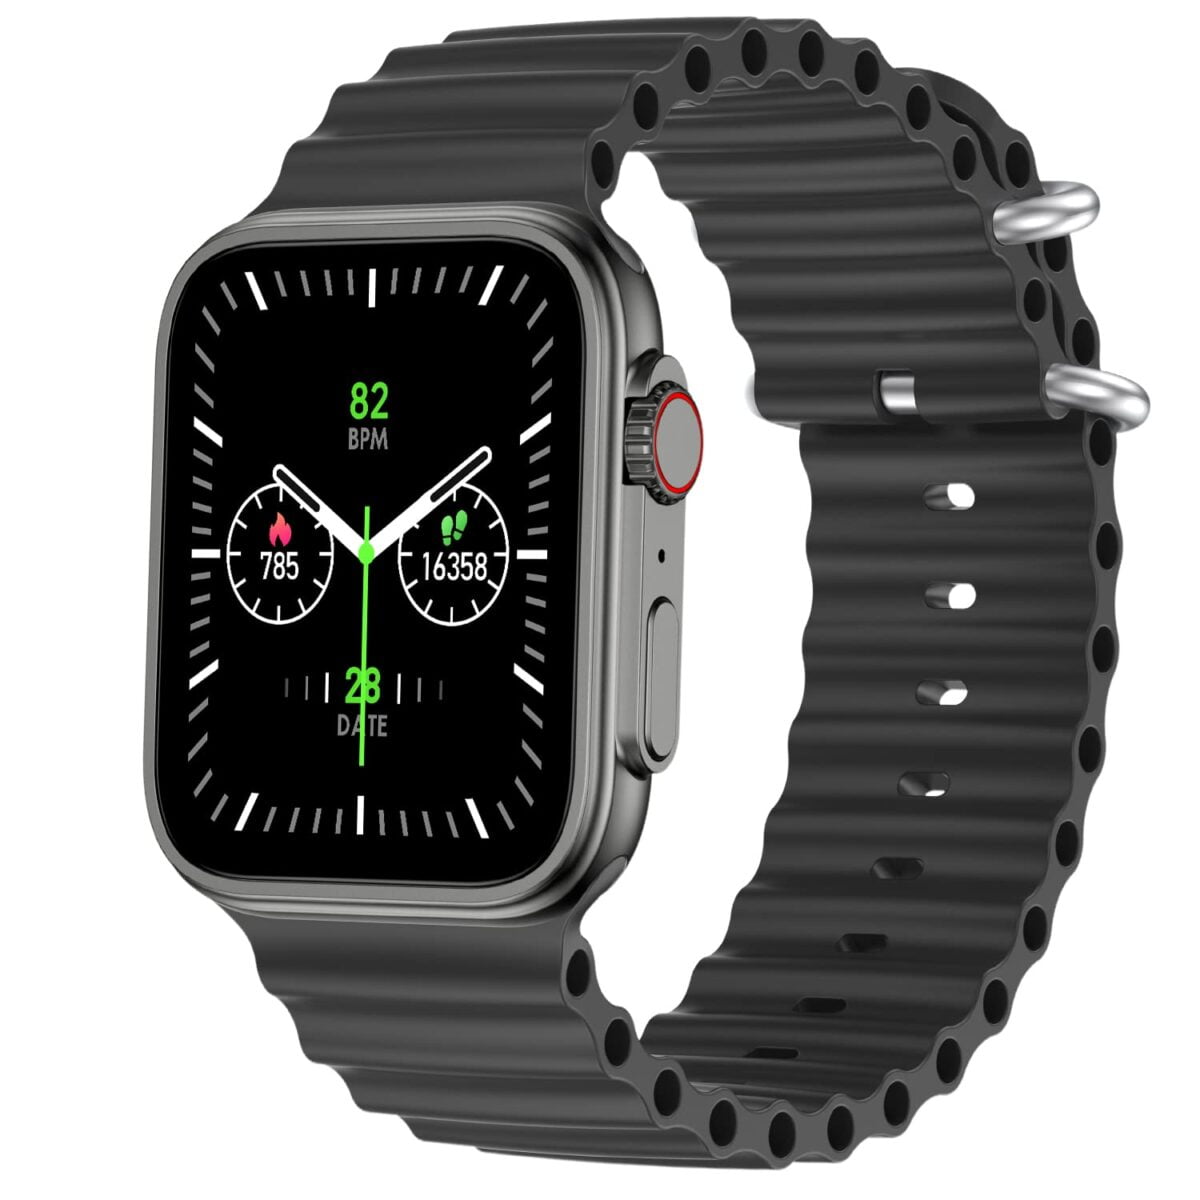 Fire boltt edge smartwatch grey 1 fire-boltt edge smartwatch